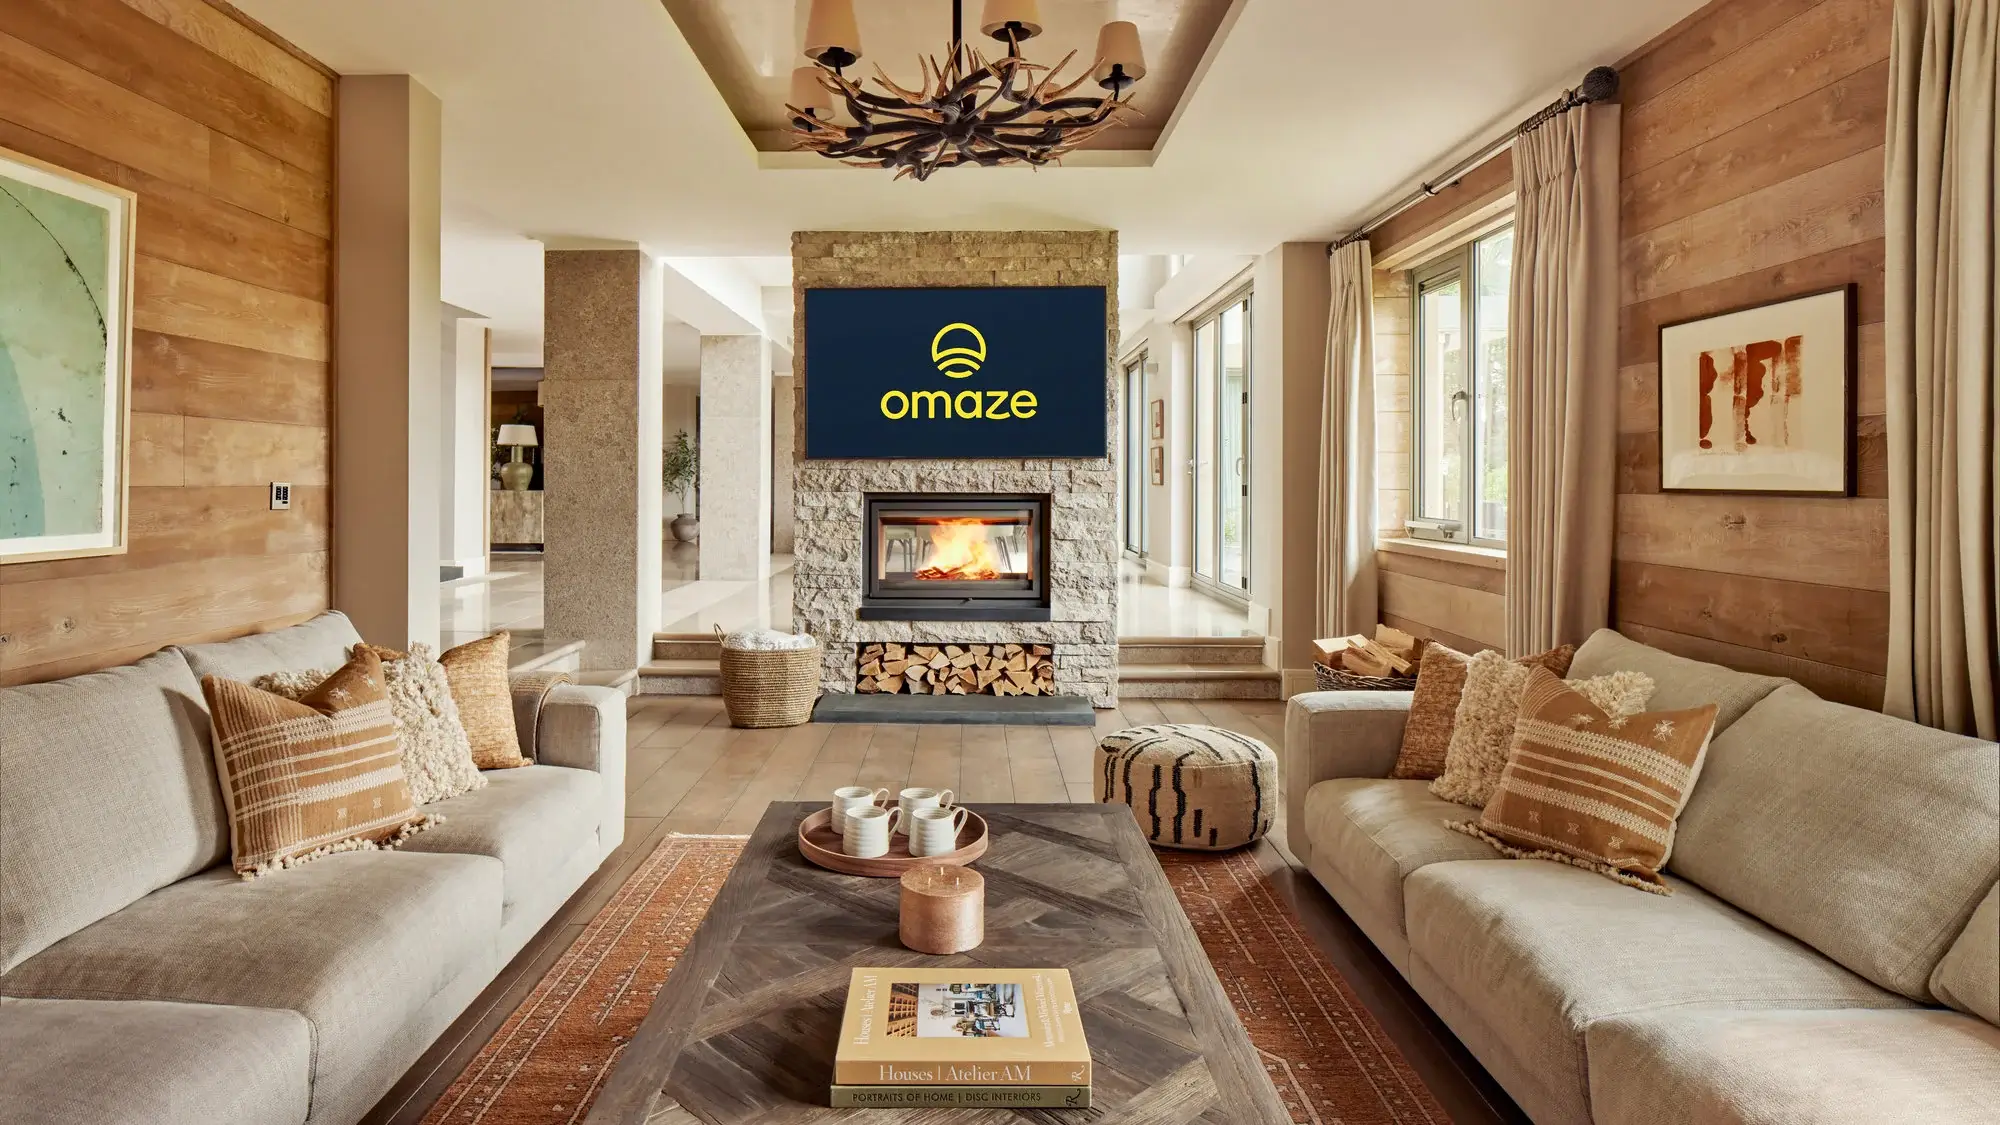 Omaze Scotland House - Fireplace